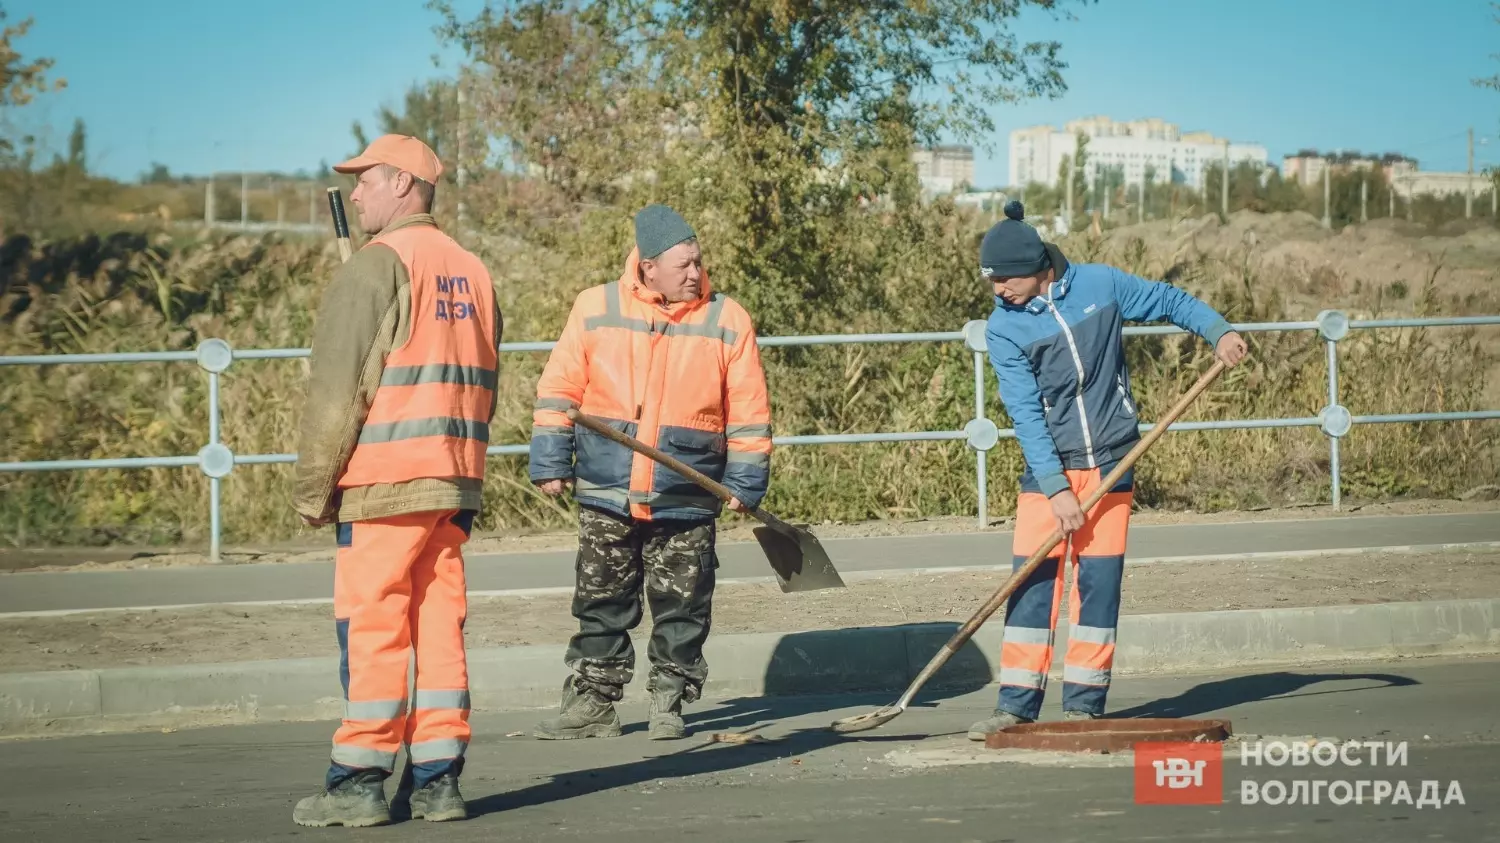 Строительство новой дороги в Волгограде ведется в рамках нацпроекта Безопасные качественные дороги